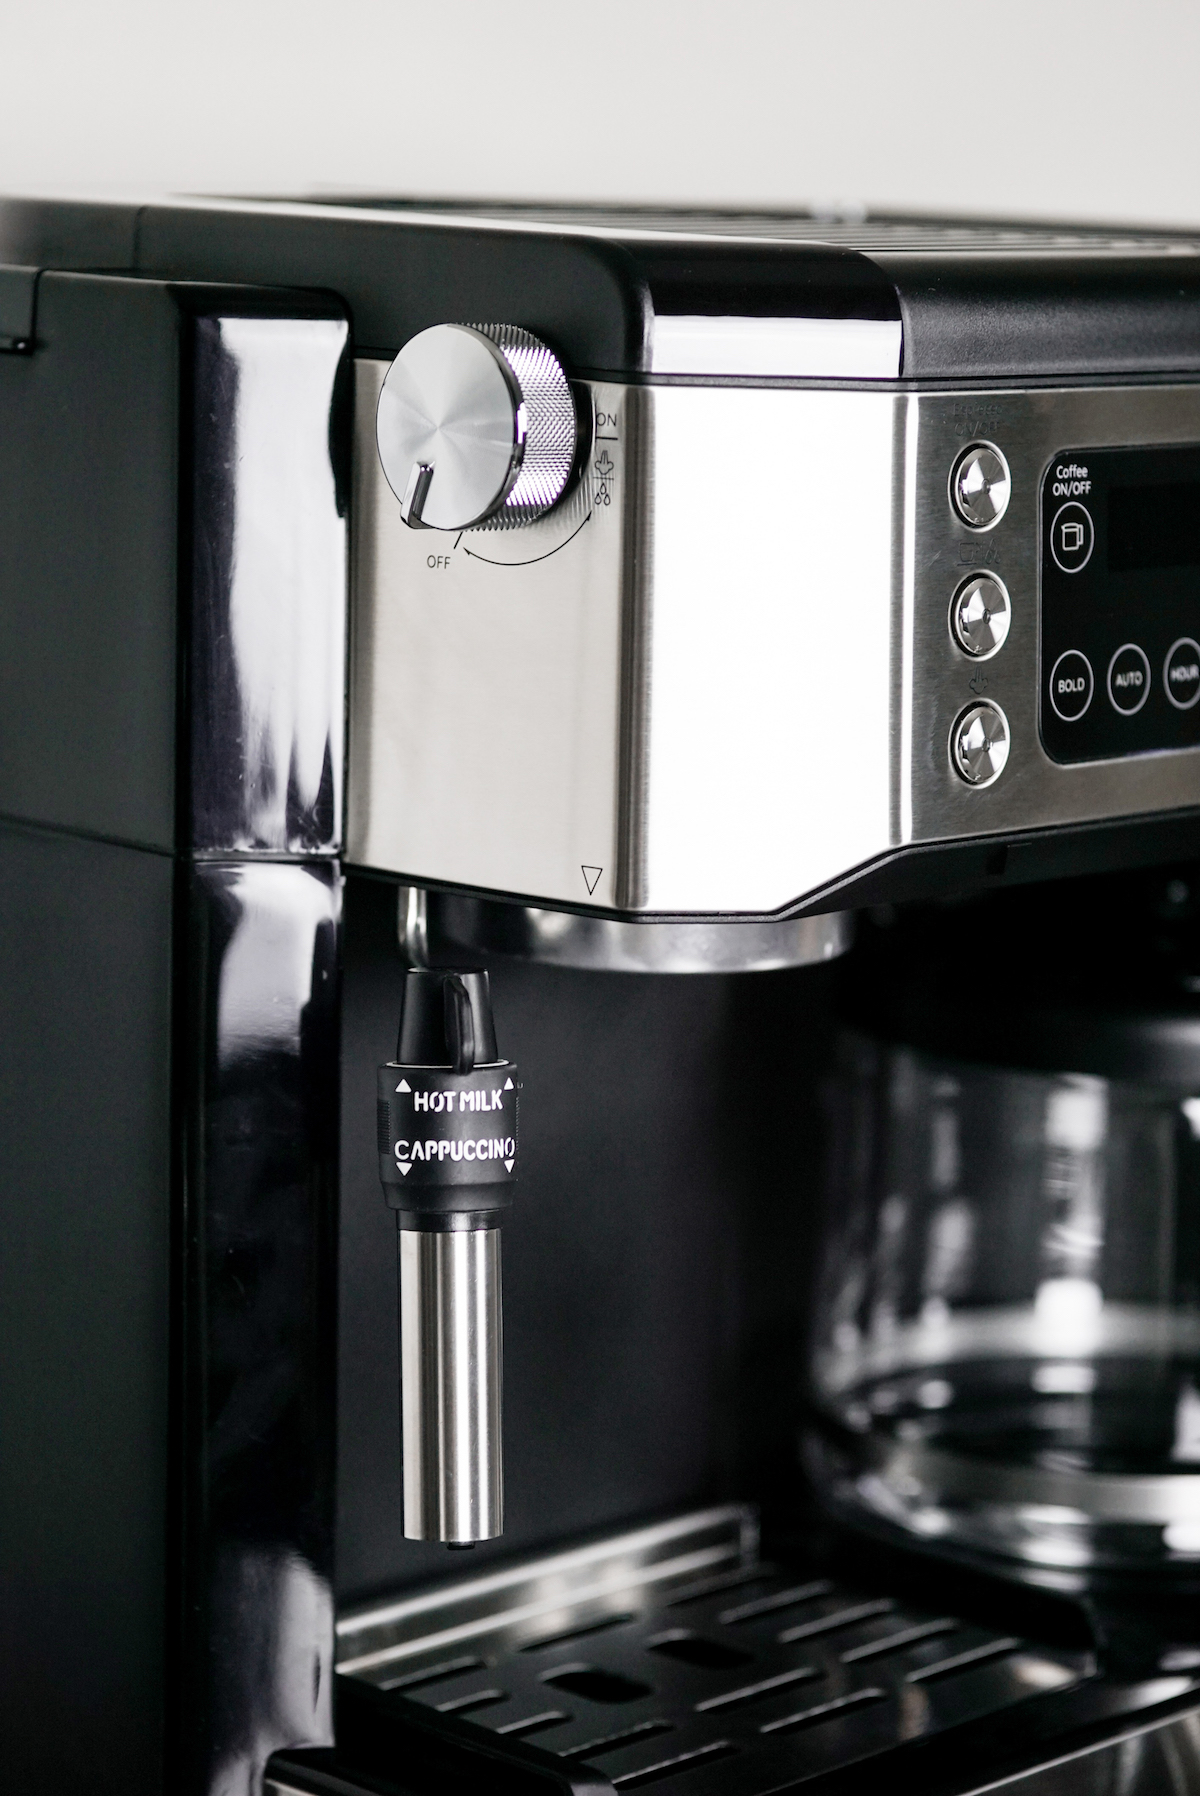 delonghi, Kitchen, Delonghi Com53m Allinone Combination Coffee And Espresso  Machine Black